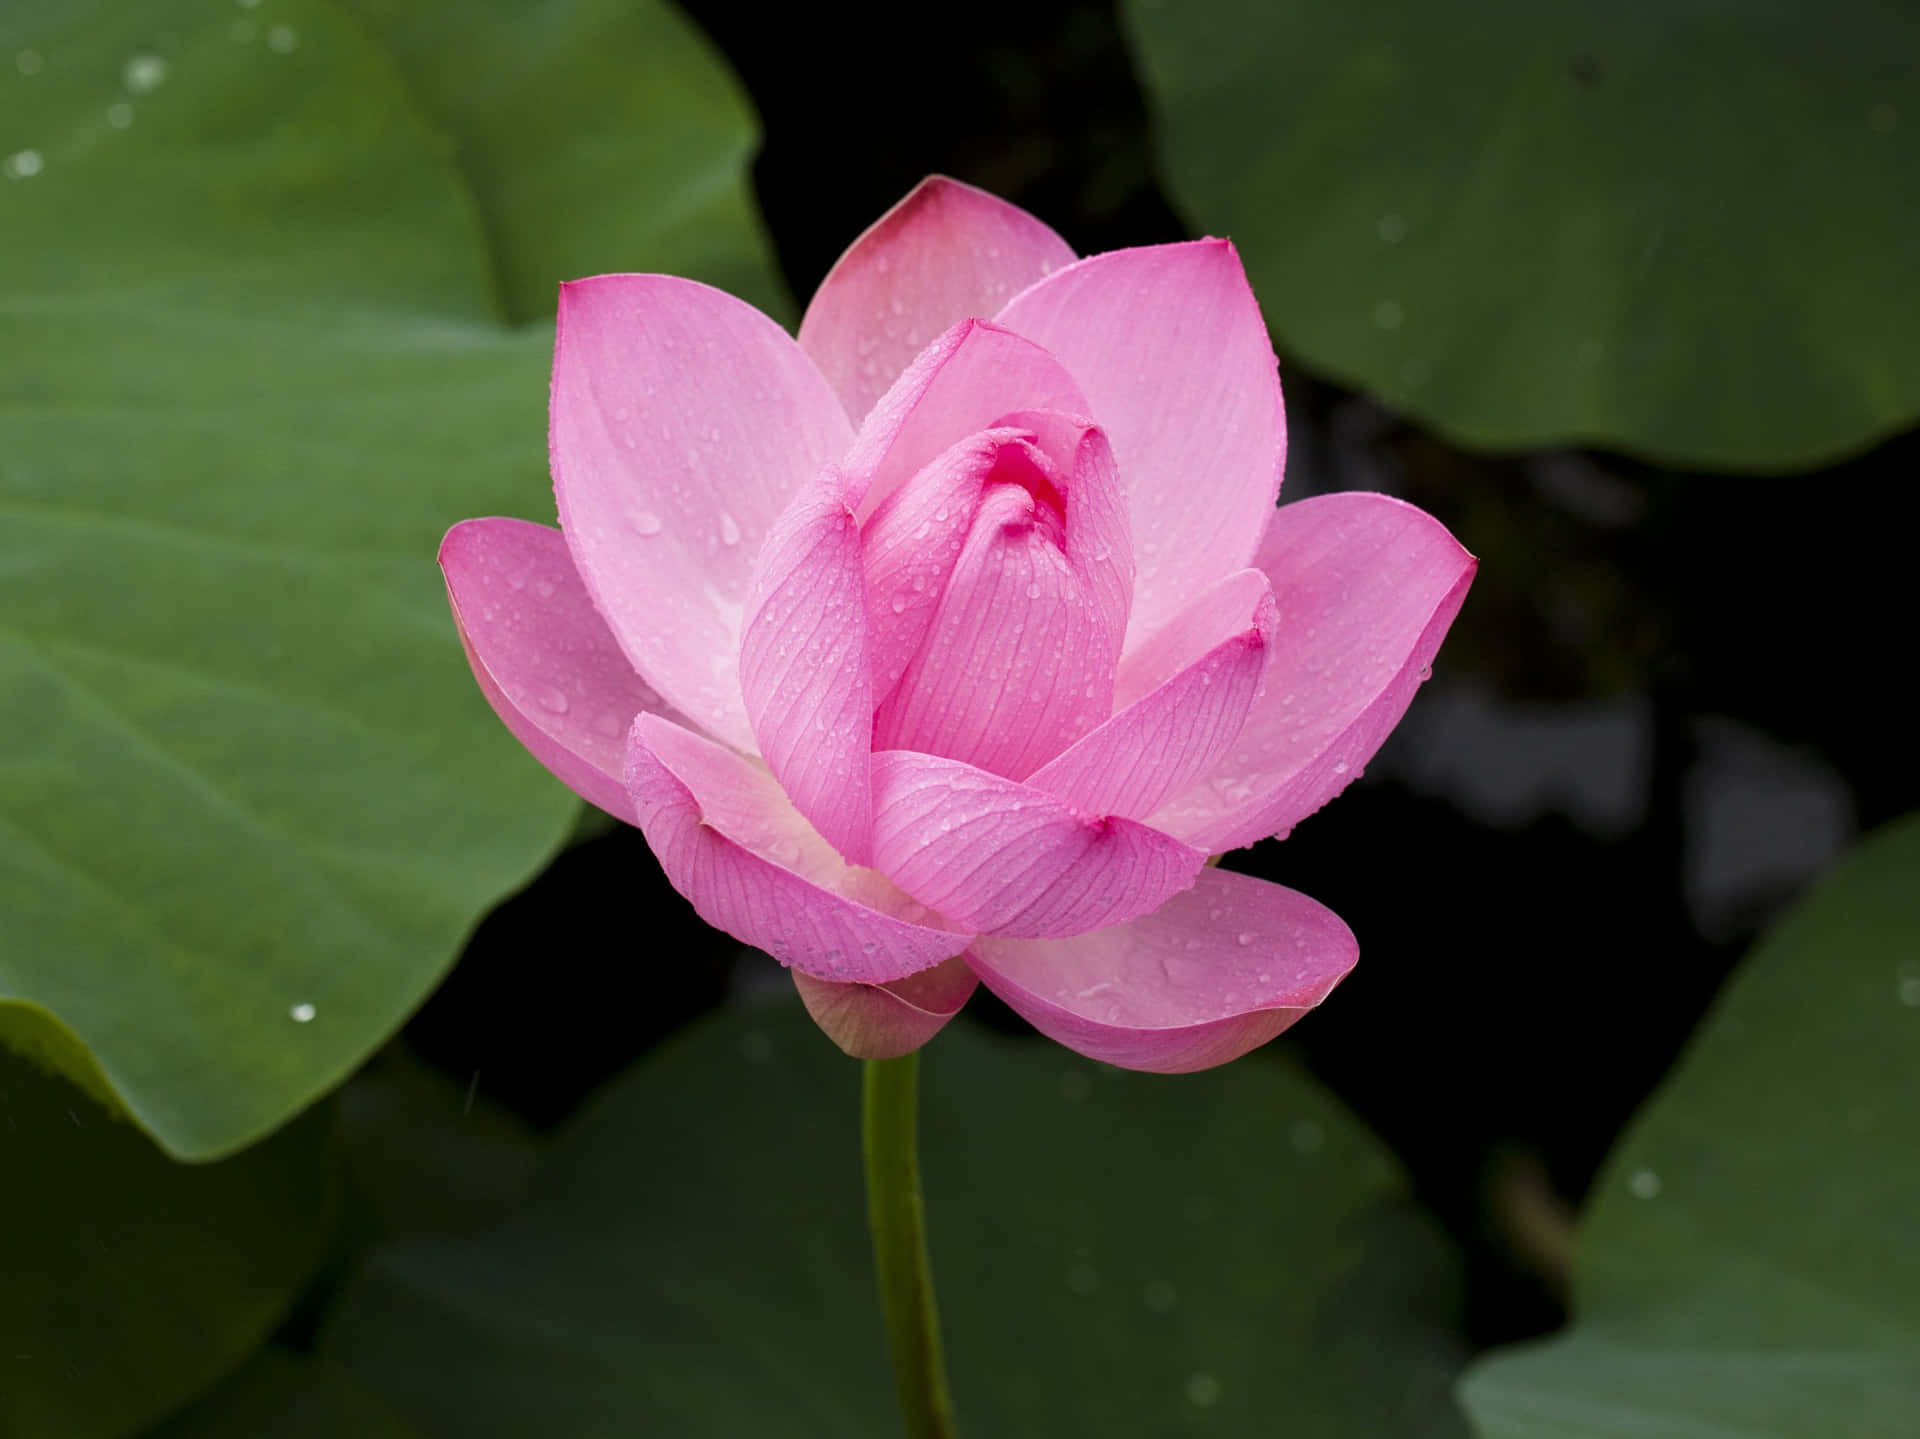 Lotusblomman,sann Symbolism För Skönhet, Upplysning Och Skörhet.